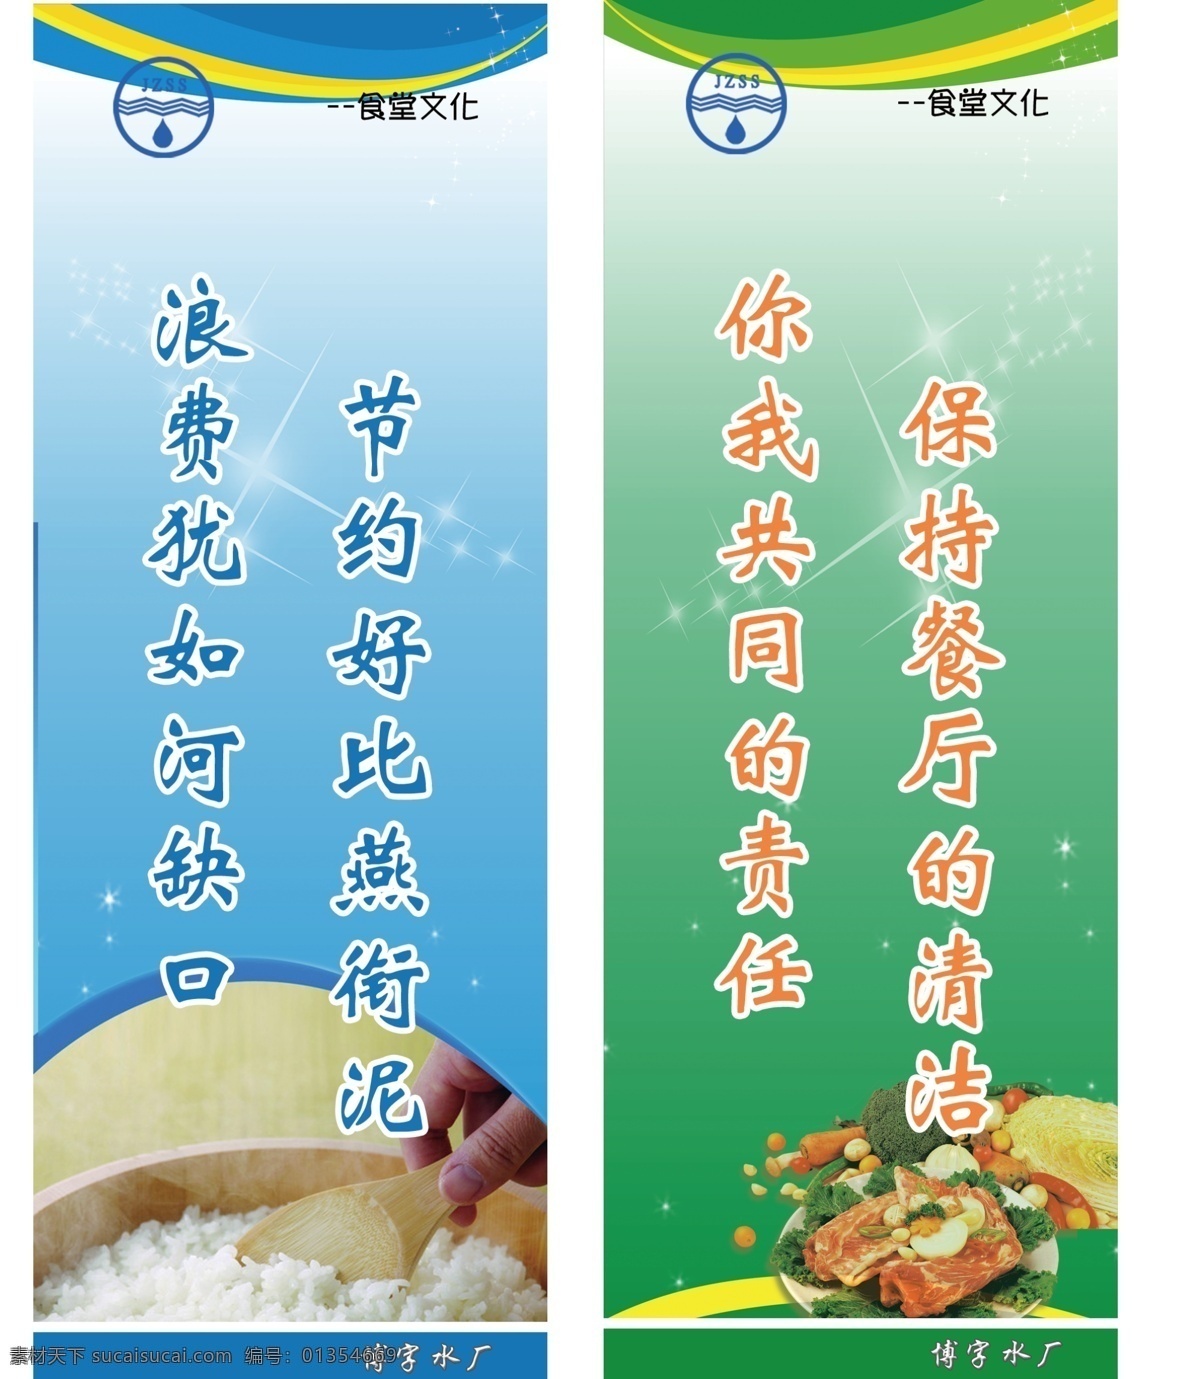 食堂 文化图片 广告设计模板 节约粮食 蓝色背景 绿色 米饭 食堂文化 文化 源文件 企业文化海报